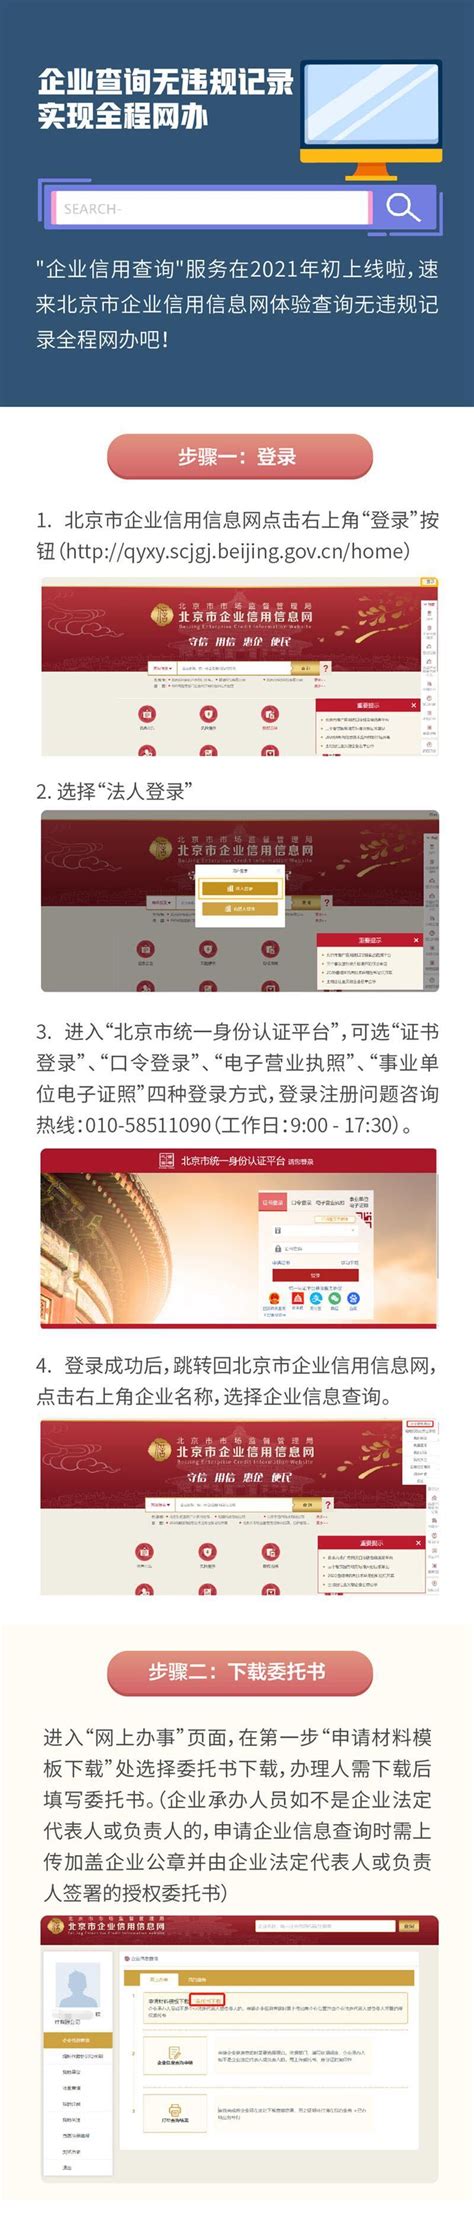 北京市企业信用信息网app下载-北京市企业信用信息网手机版下载v3.1.0 安卓官方版-旋风软件园